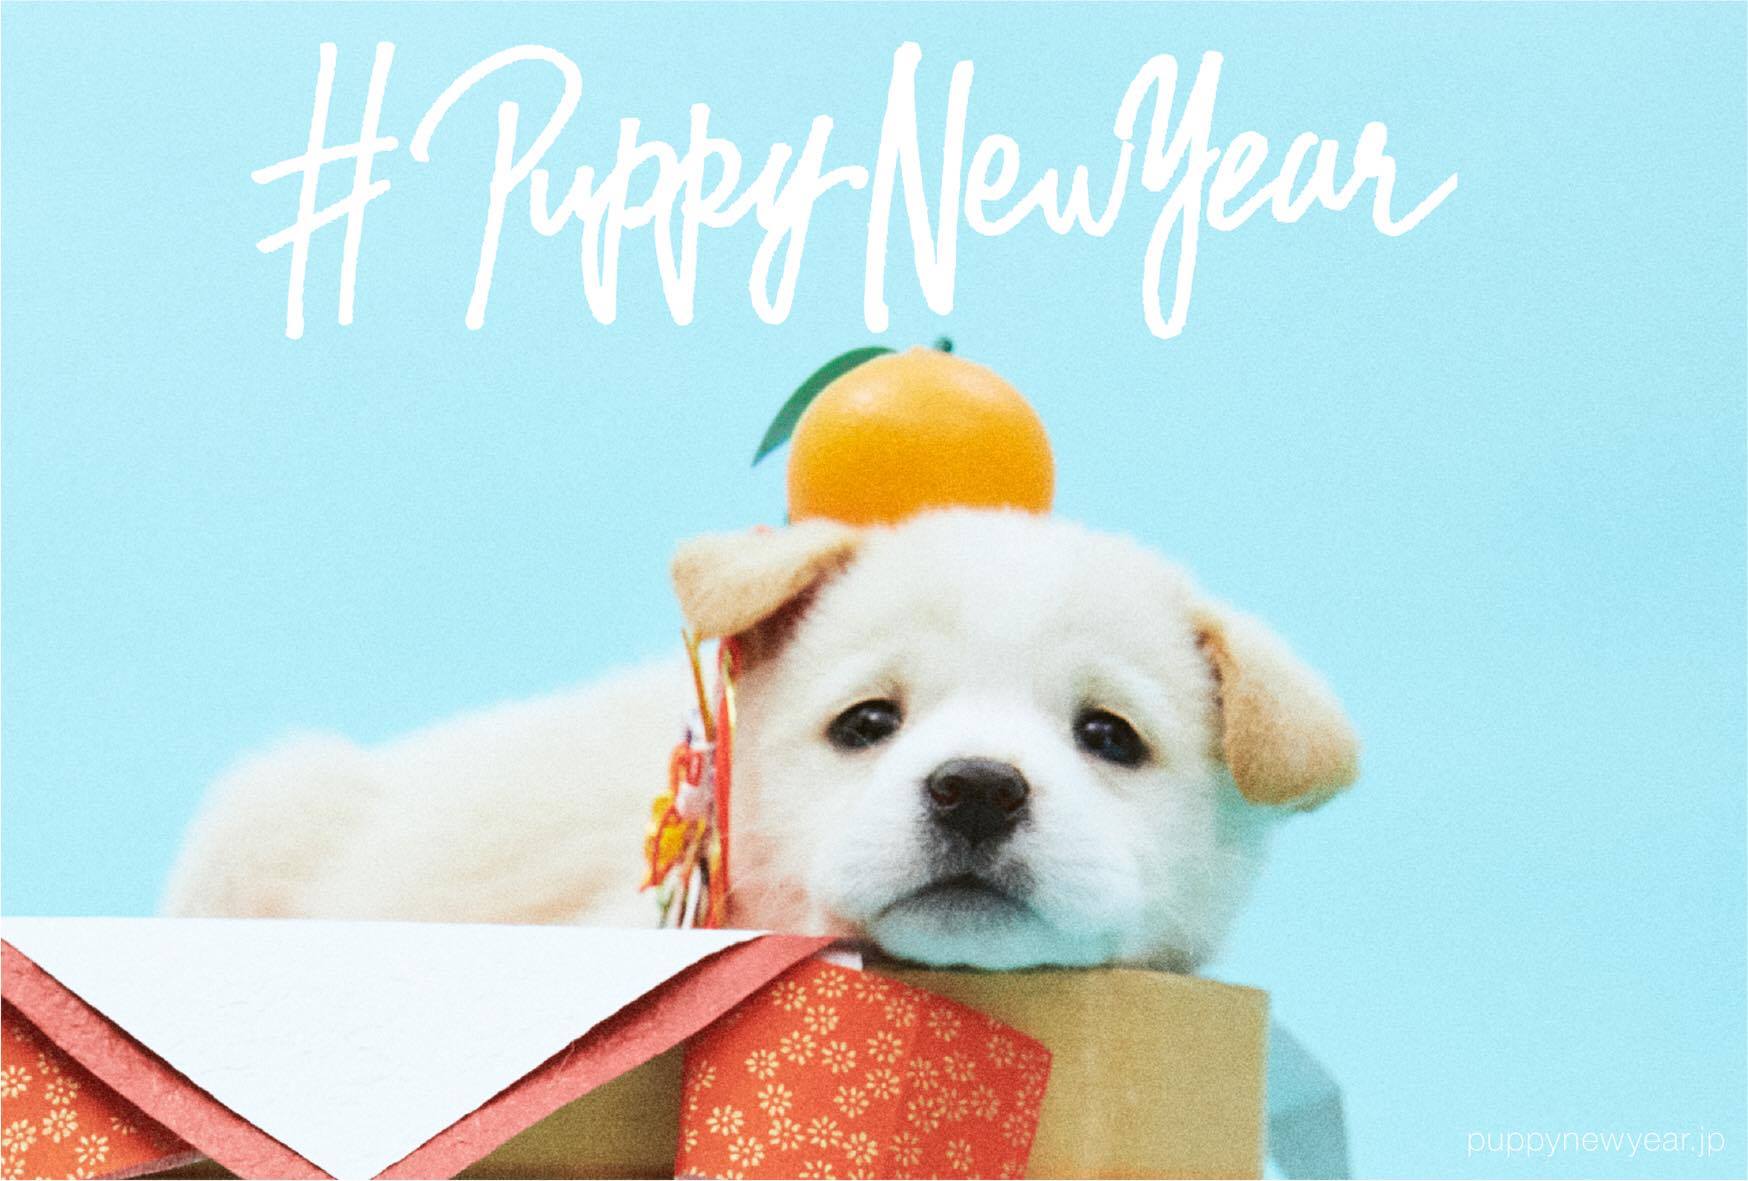 年賀状で里親探しのお手伝い 保護犬がモデルのフリーデザイン年賀状サイトで人間もワンちゃんもハッピーに Pouch ポーチ